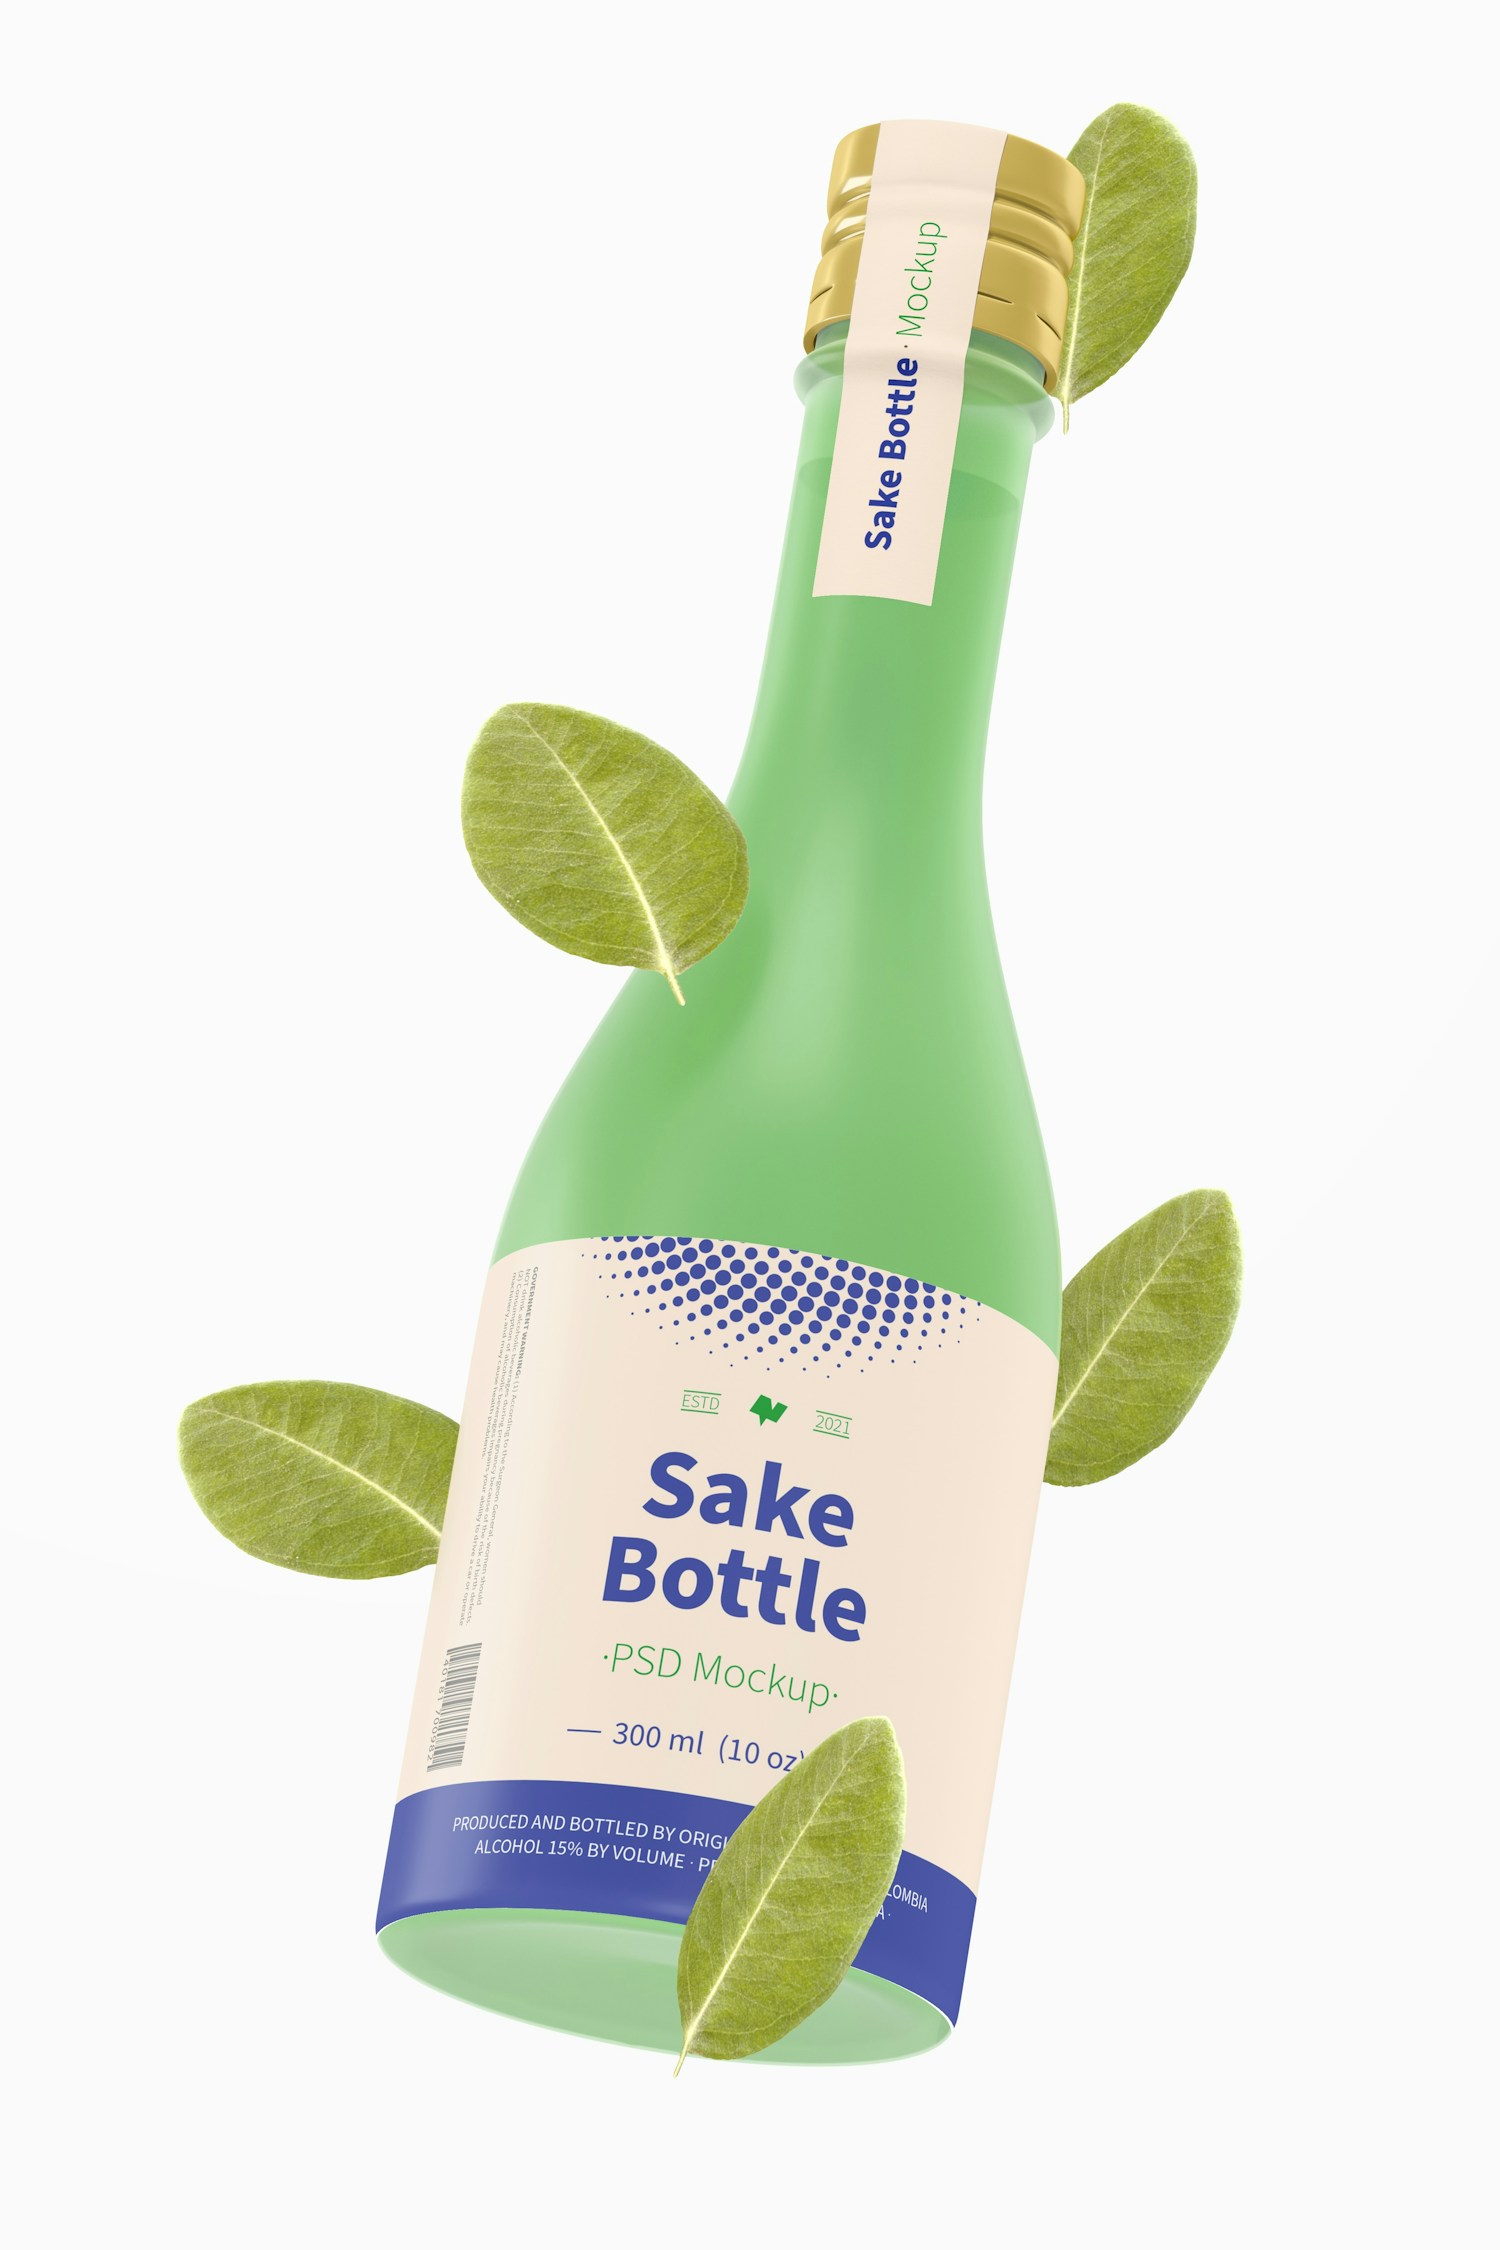 Sake Bottle Mockup, Floating